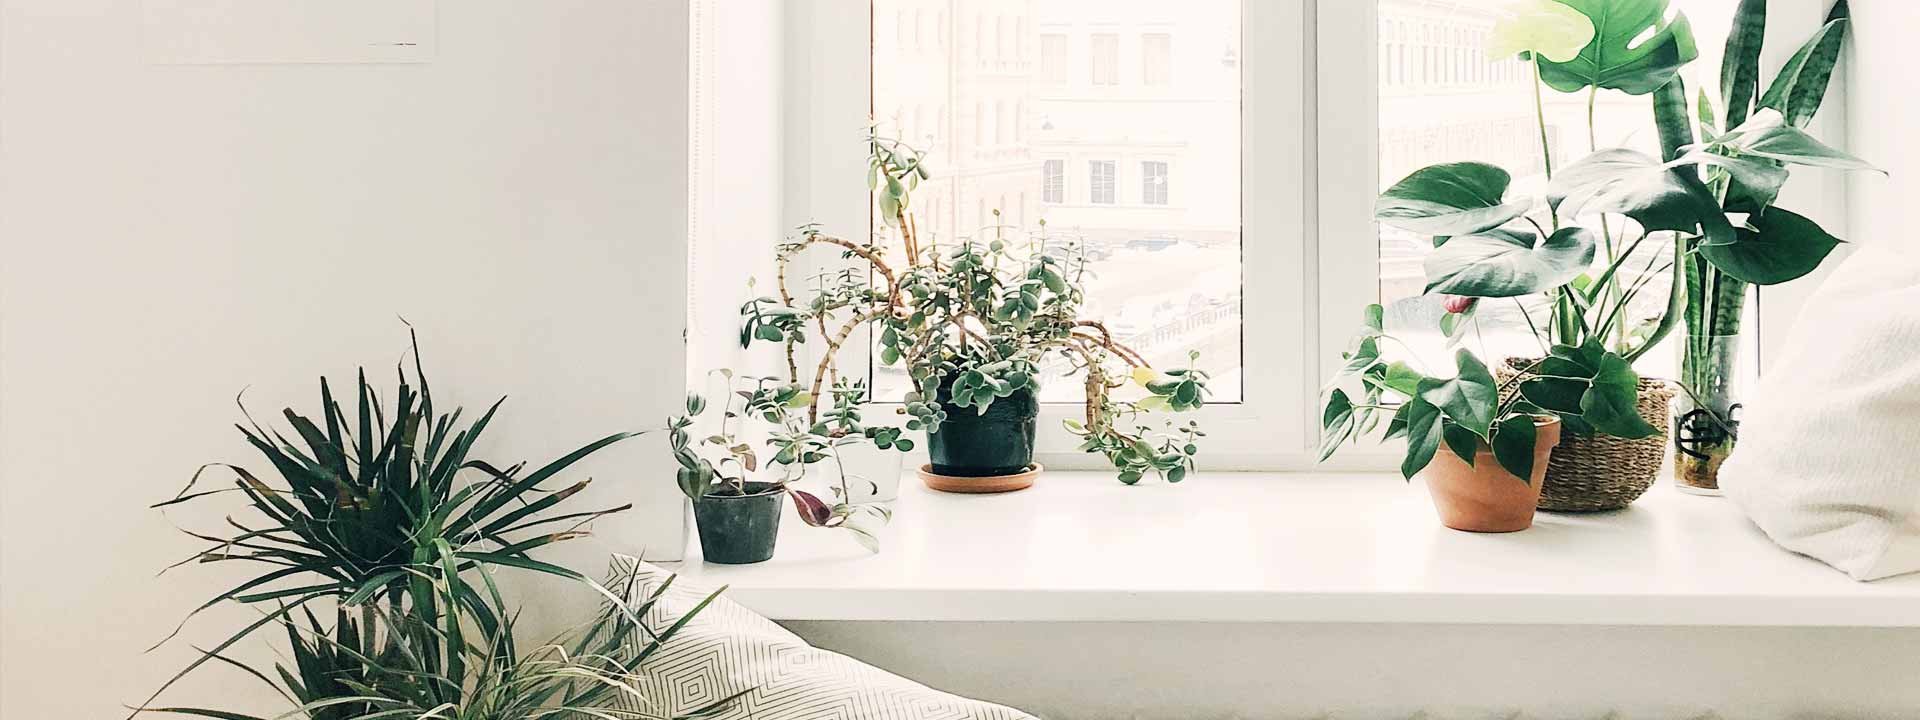 Les plantes d'appartement : nos fiches conseil pratiques